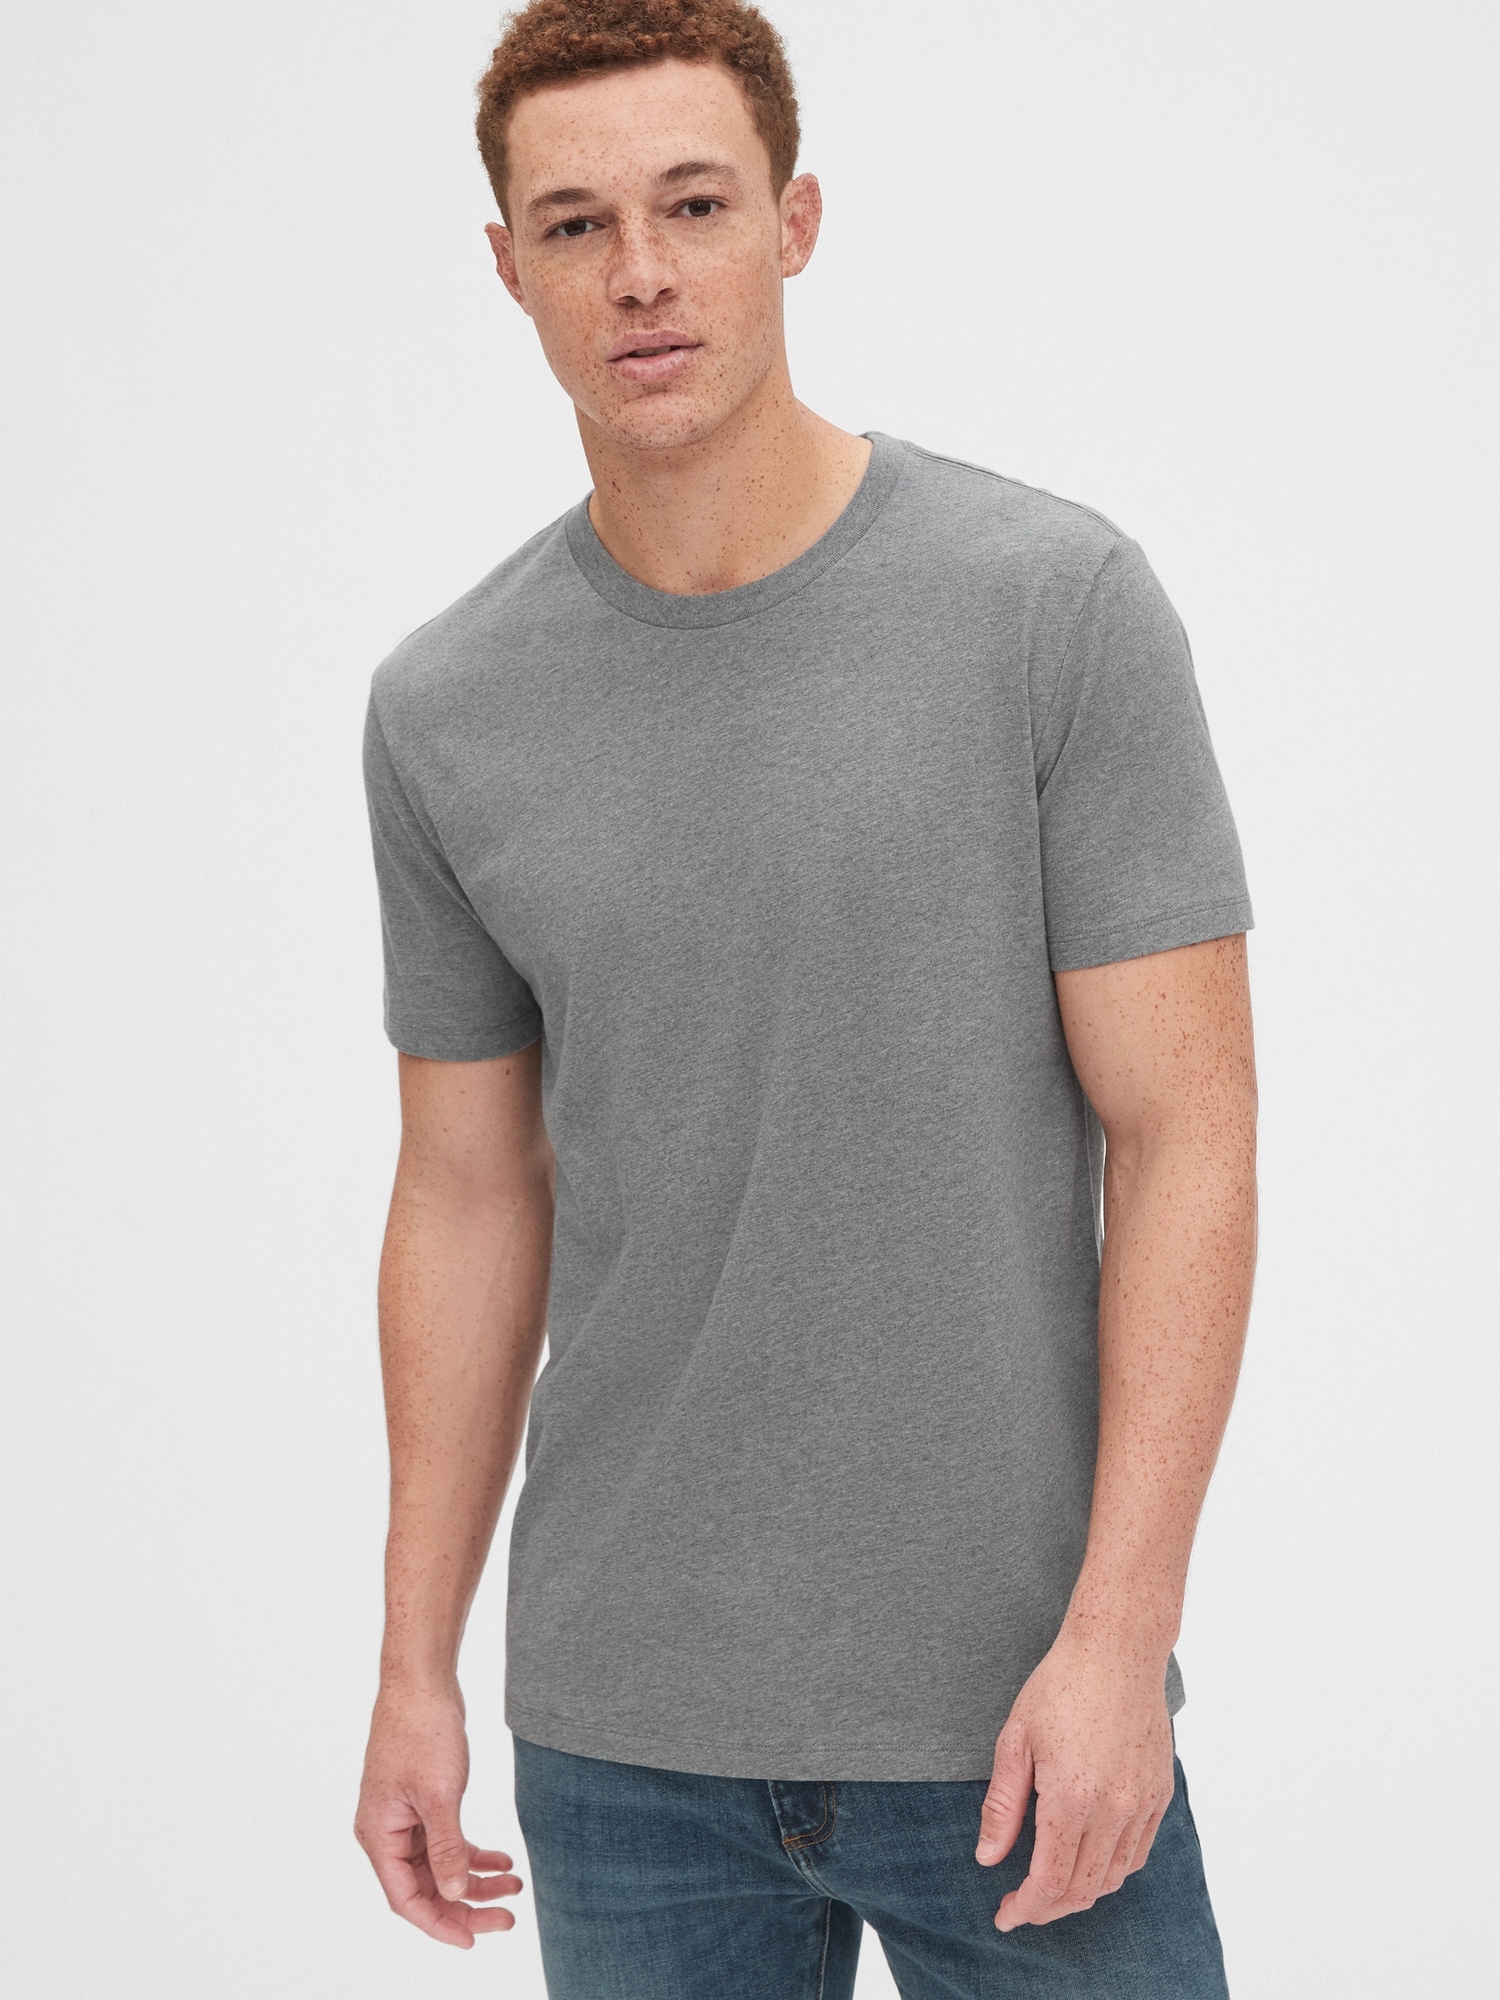 mens gray shirt